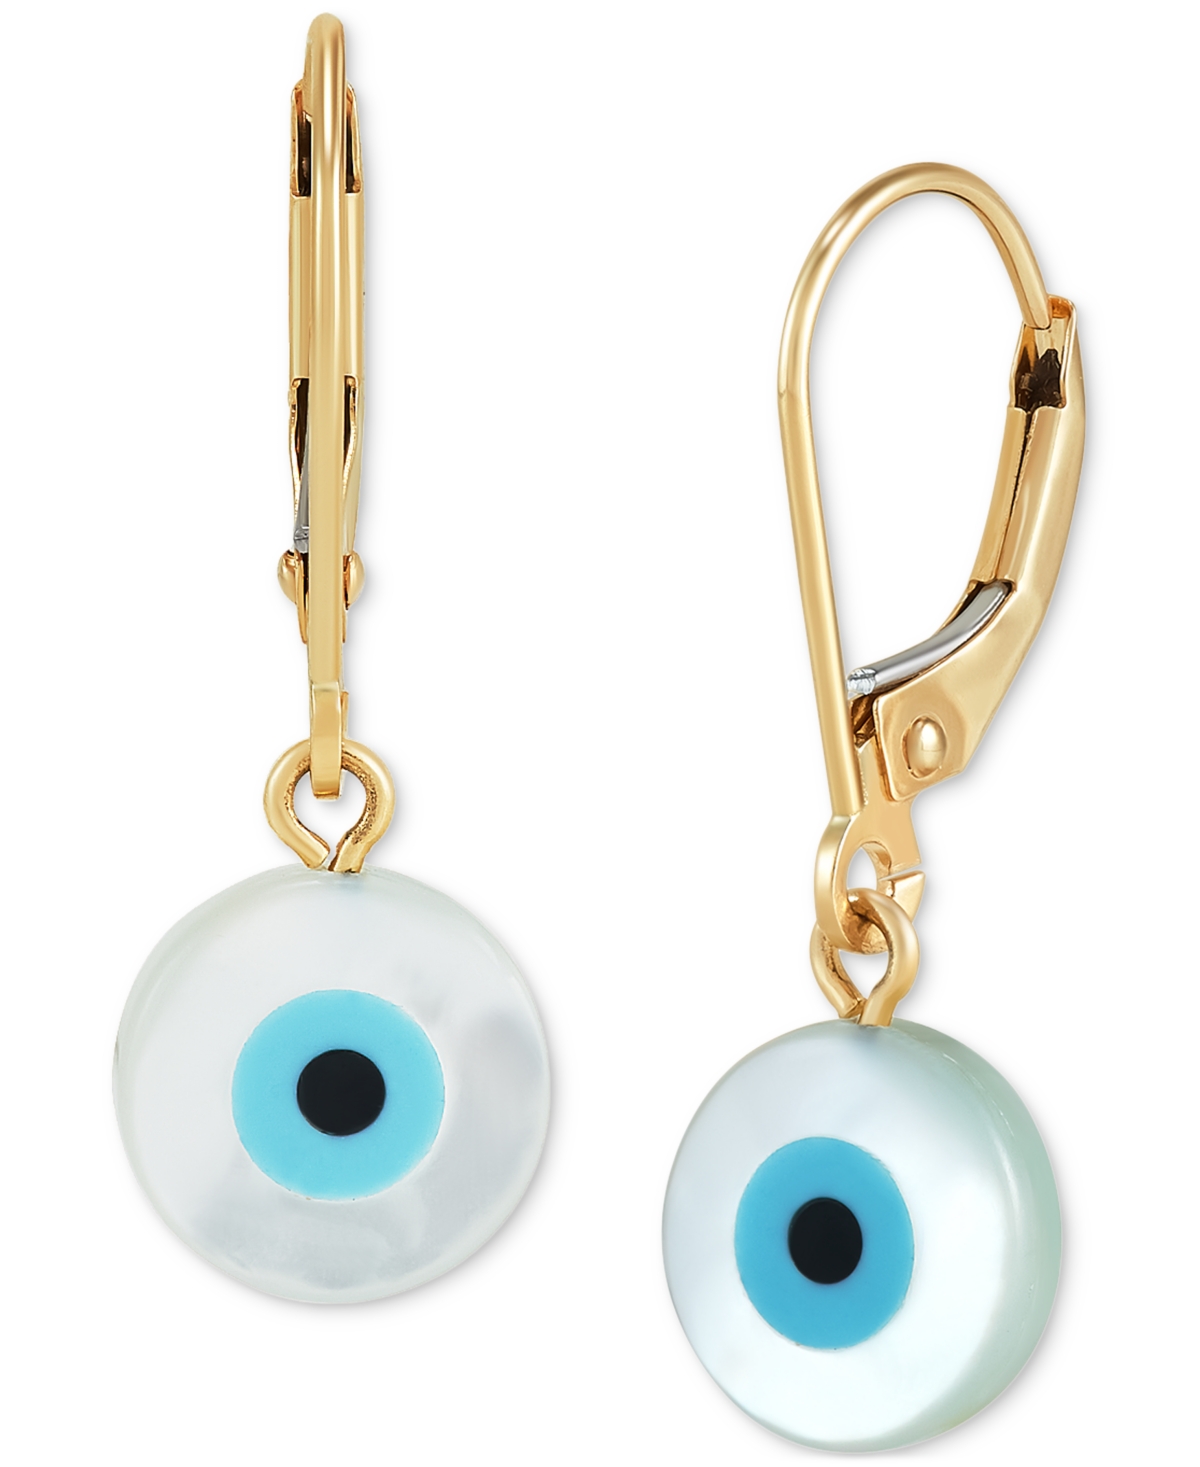 Mother of Pearl & Enamel Evil Eye Leverback Drop Earrings in 10k Gold - Yellow Gold